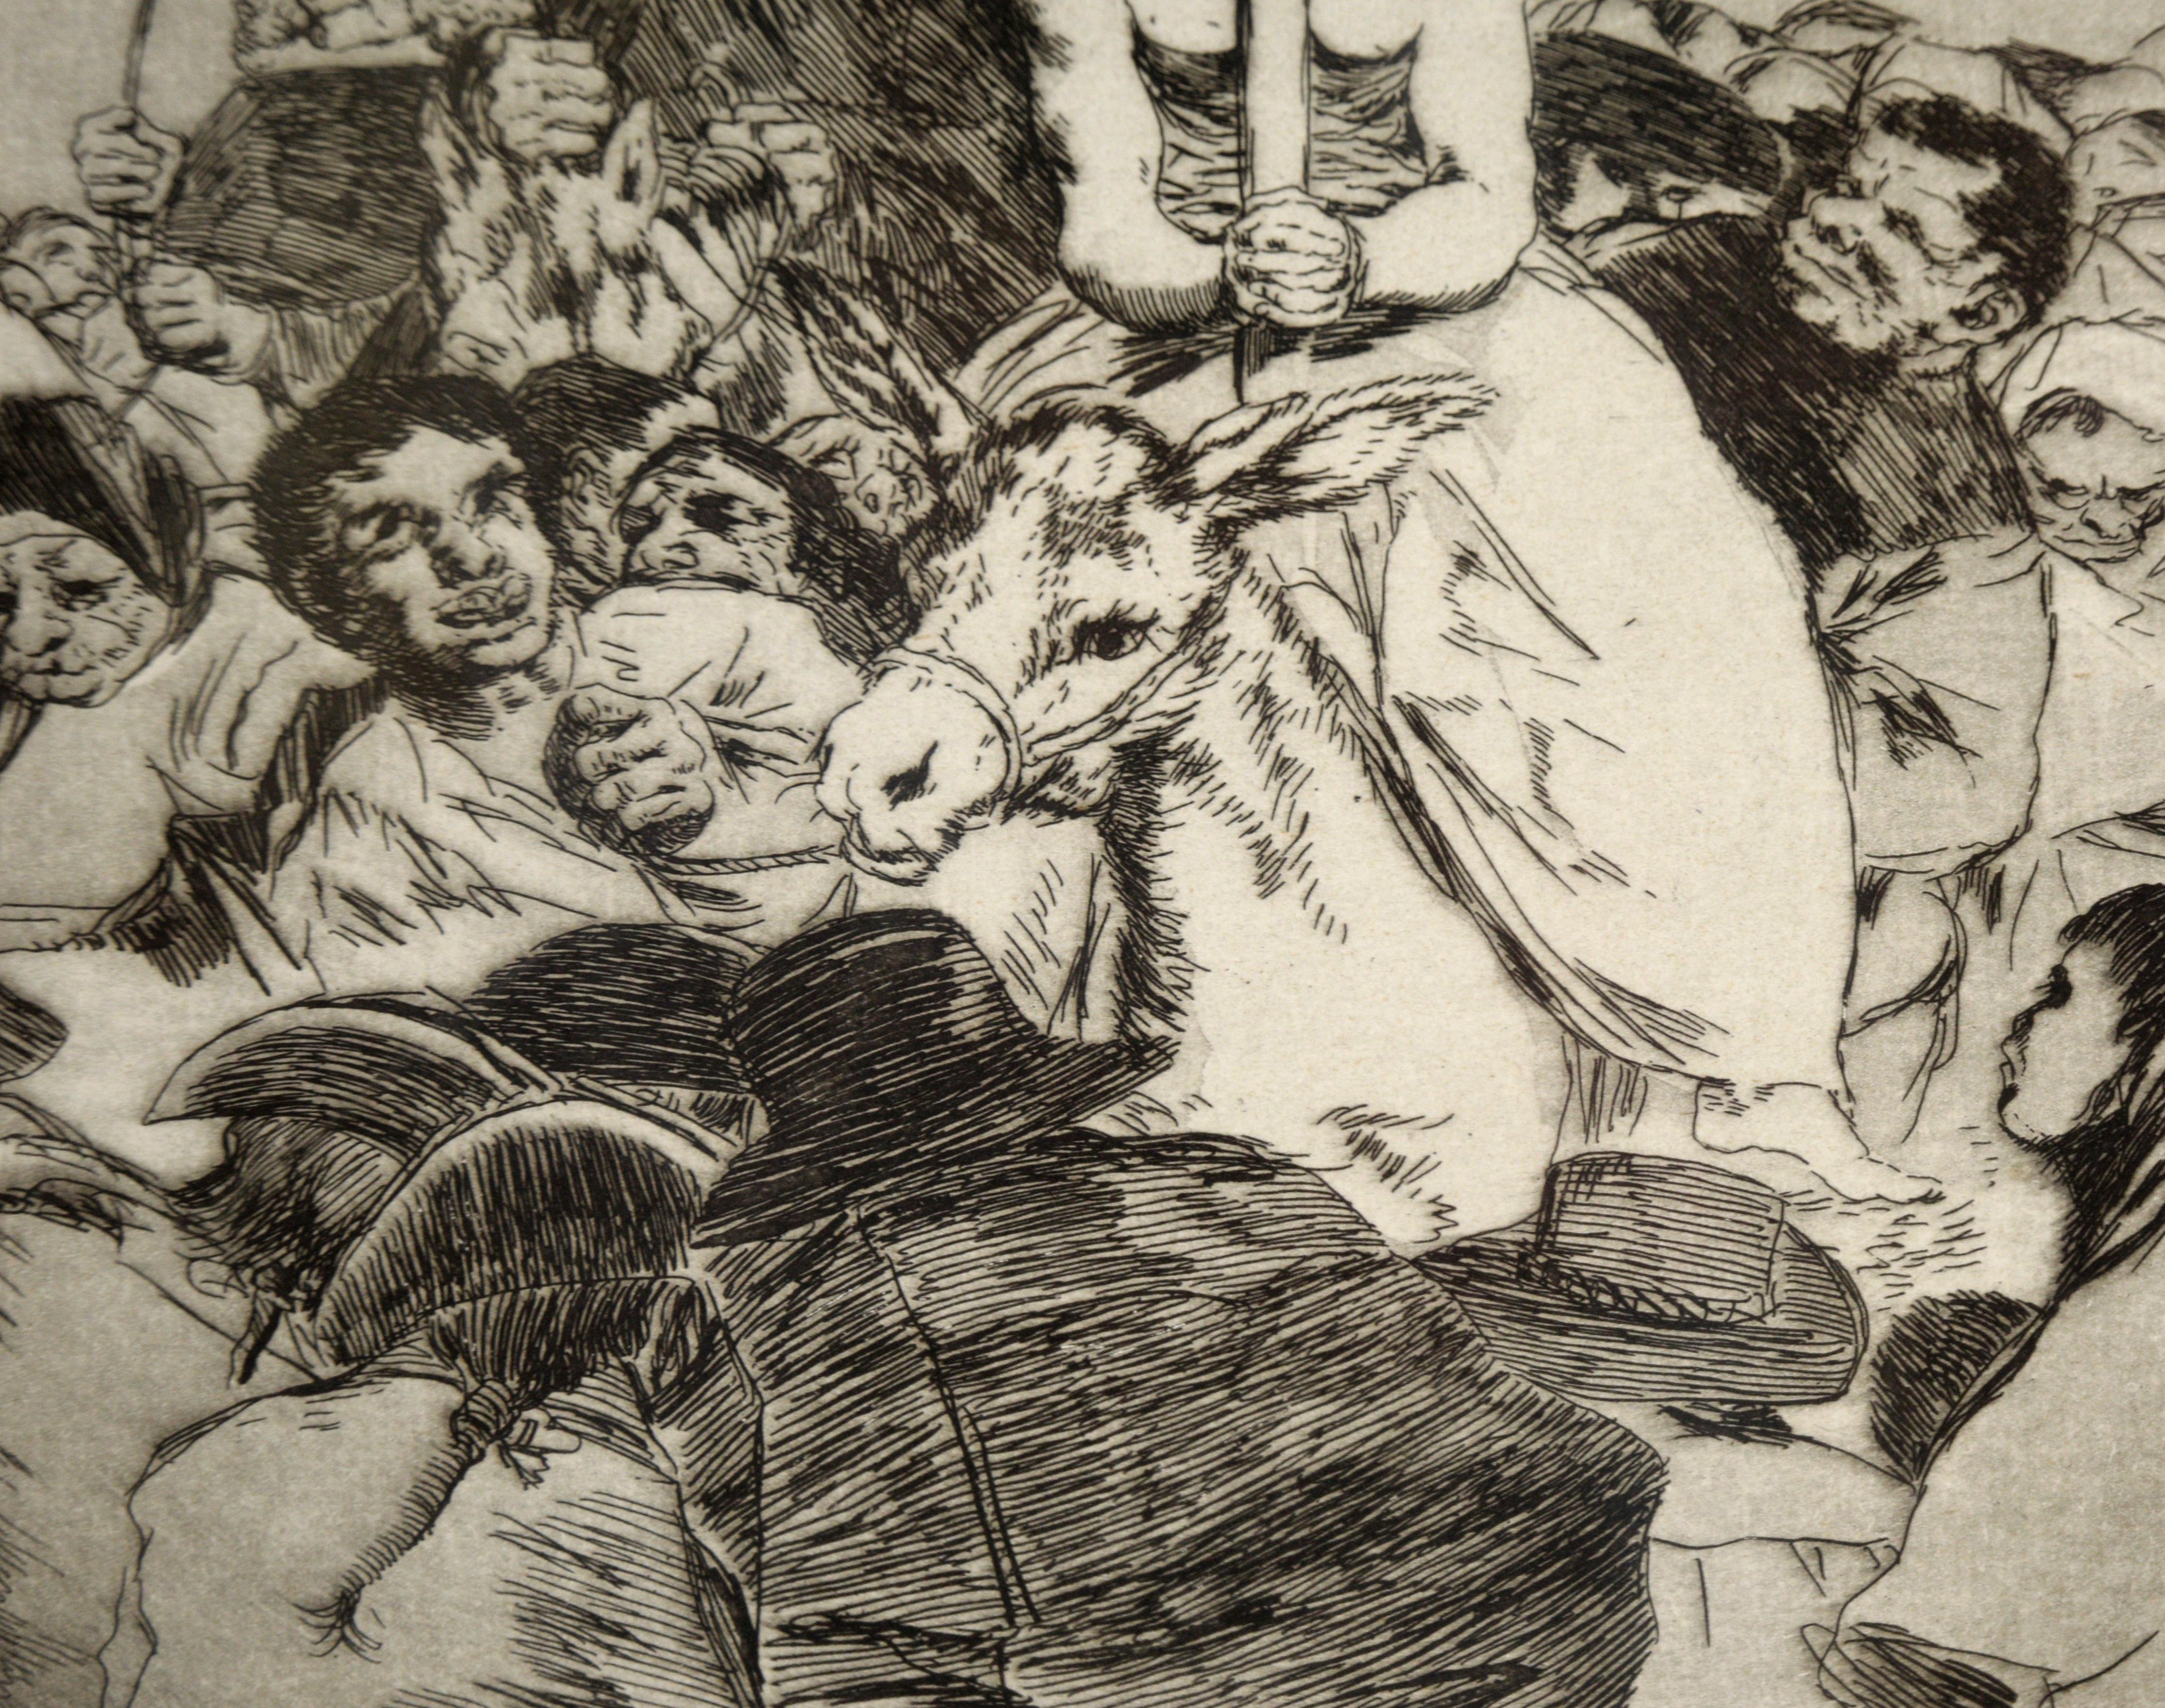 « Nohubo remedio » (Il n'y avait pas de souvenir) - eau-forte et aquatinte sur papier - Beige Animal Print par Francisco Goya